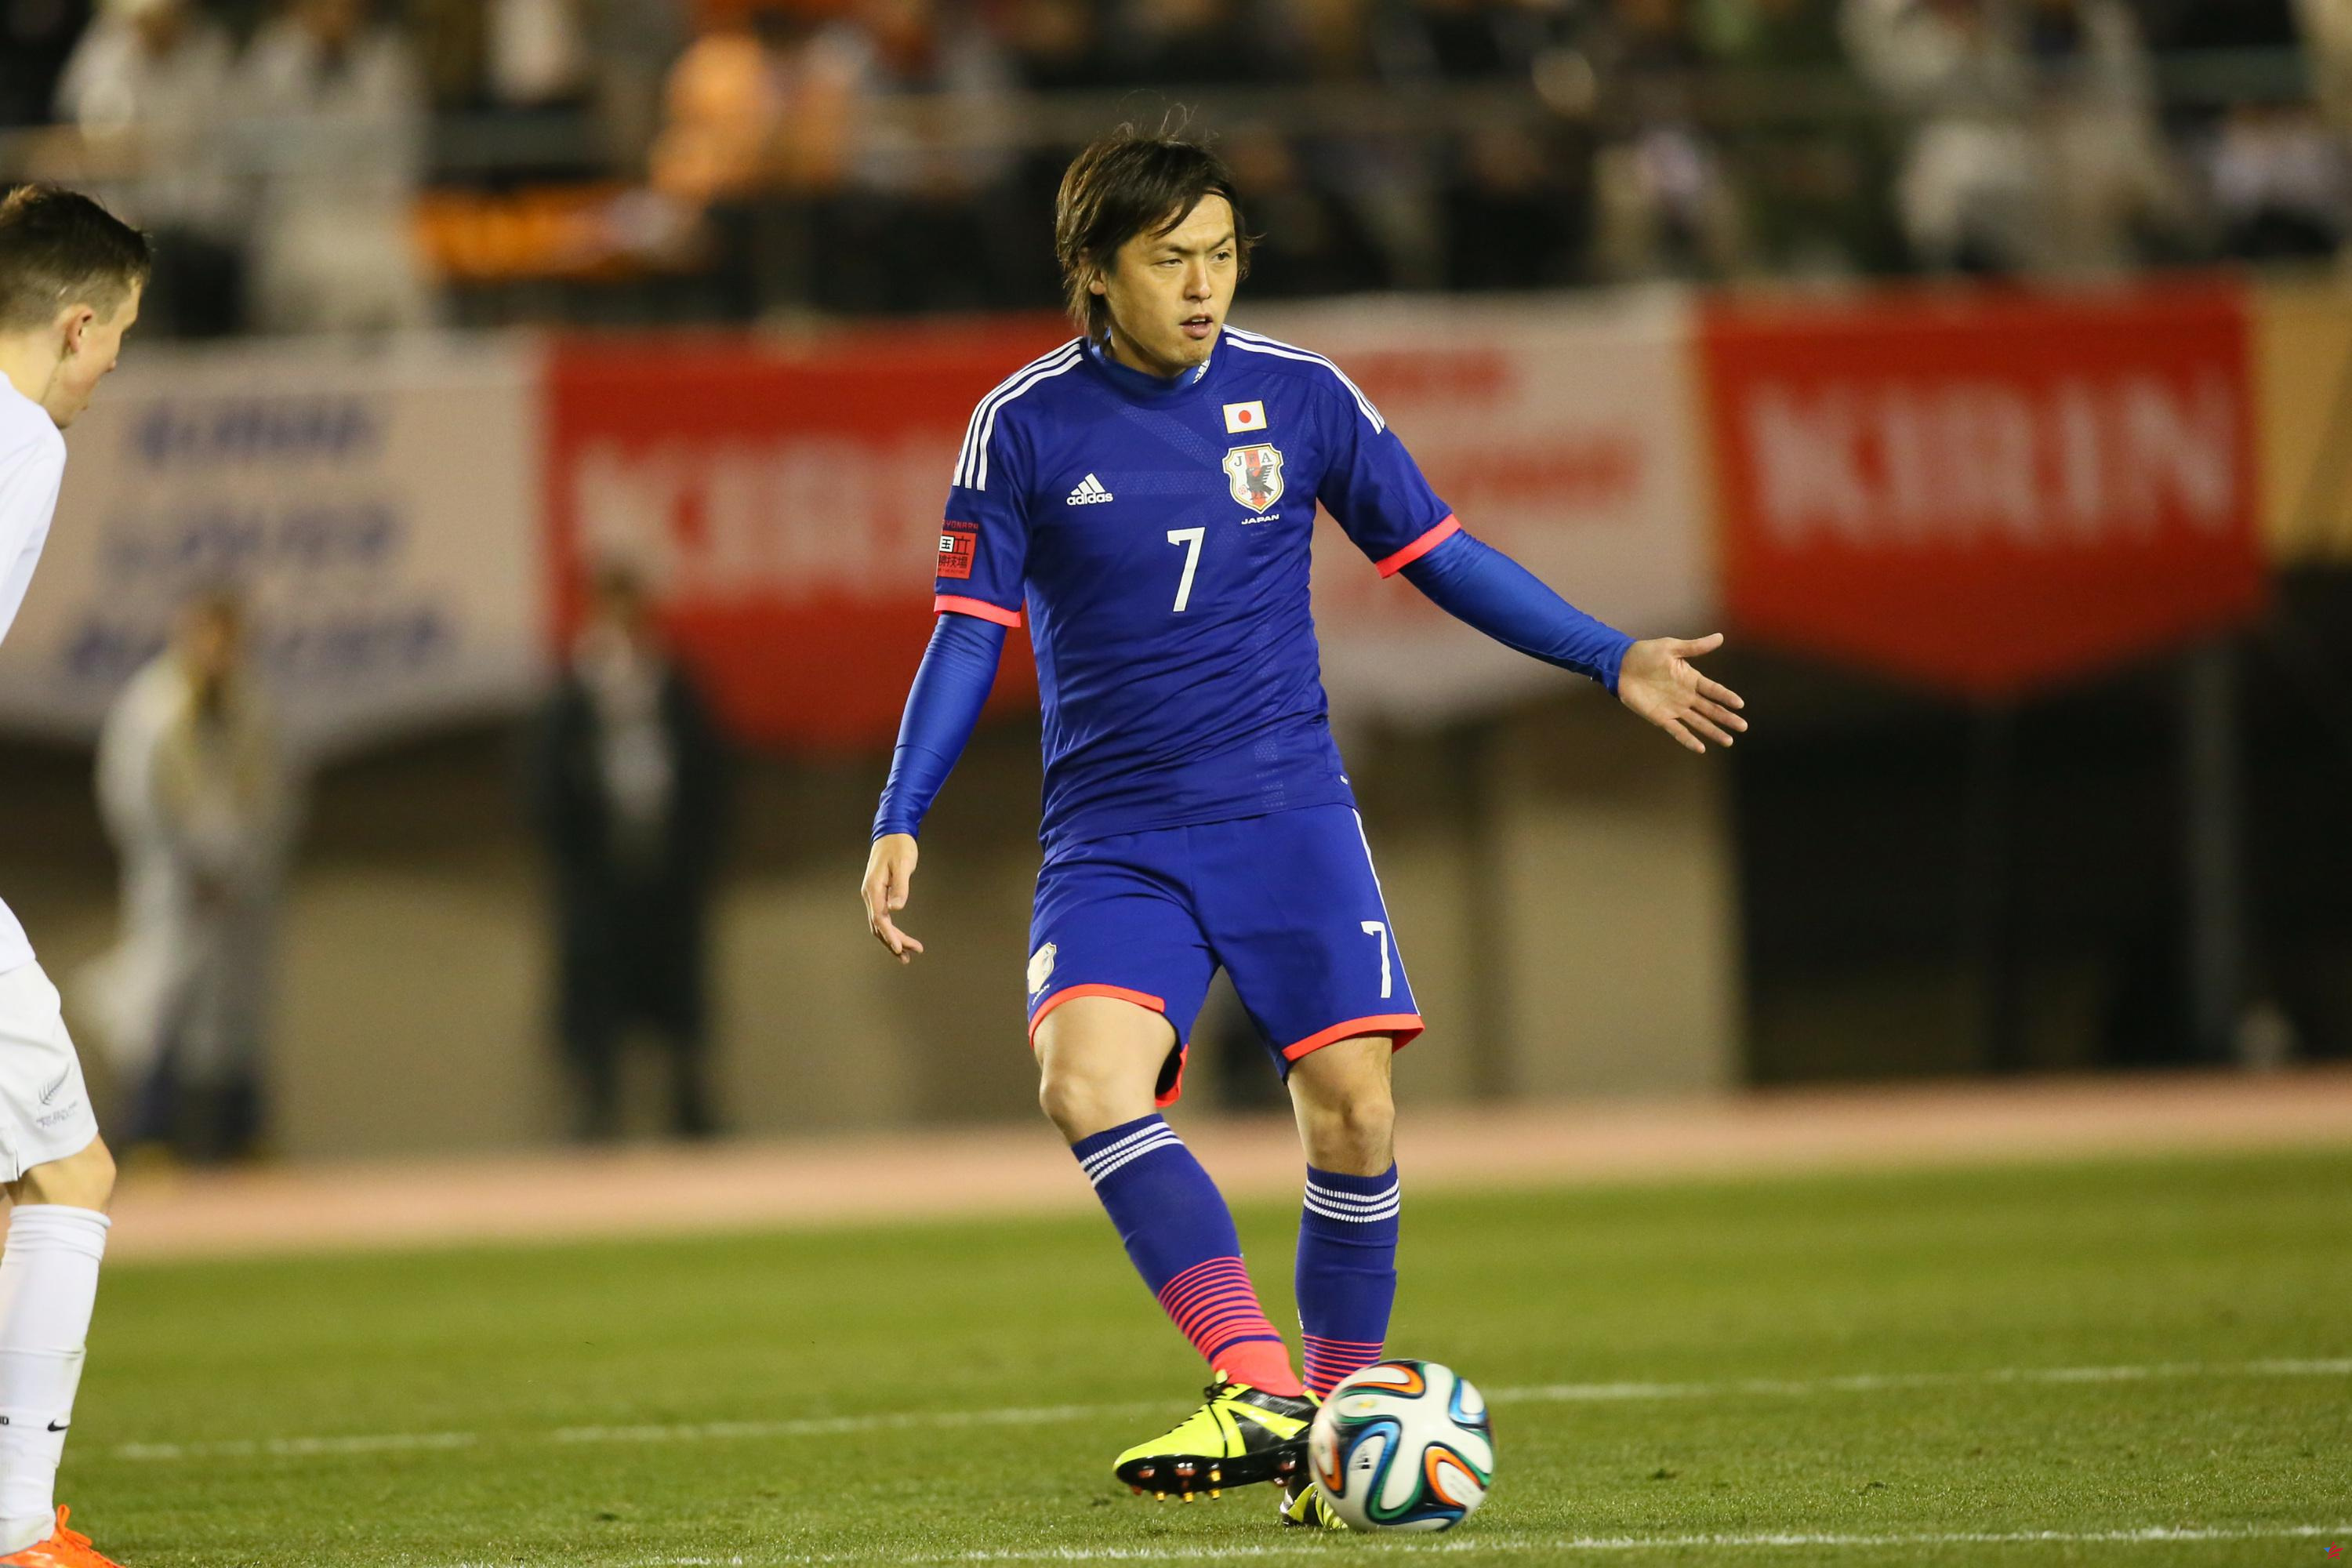 Fútbol: Yasuhito Endo pone fin a su carrera de 26 años